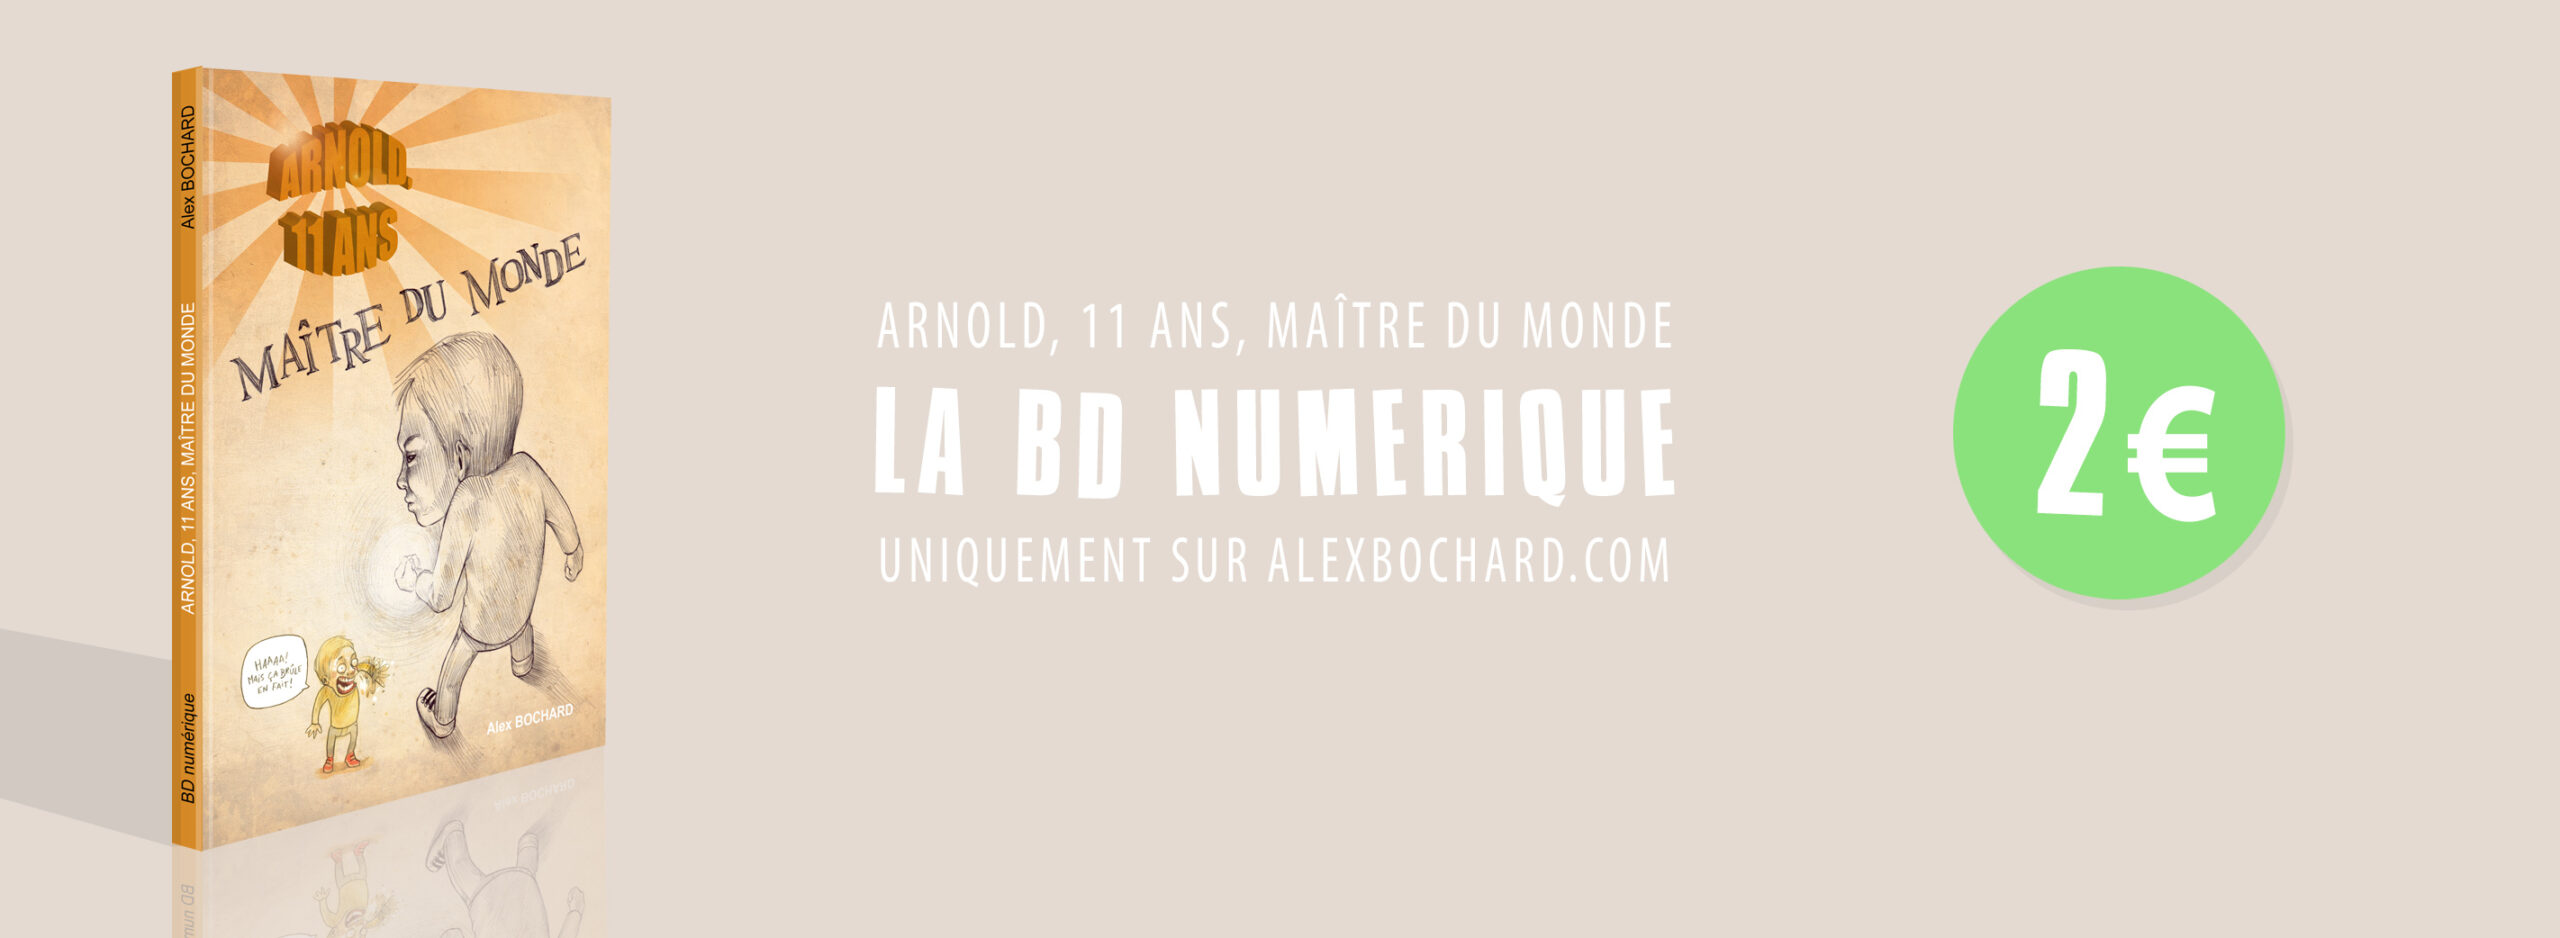 BD-Arnold (1)